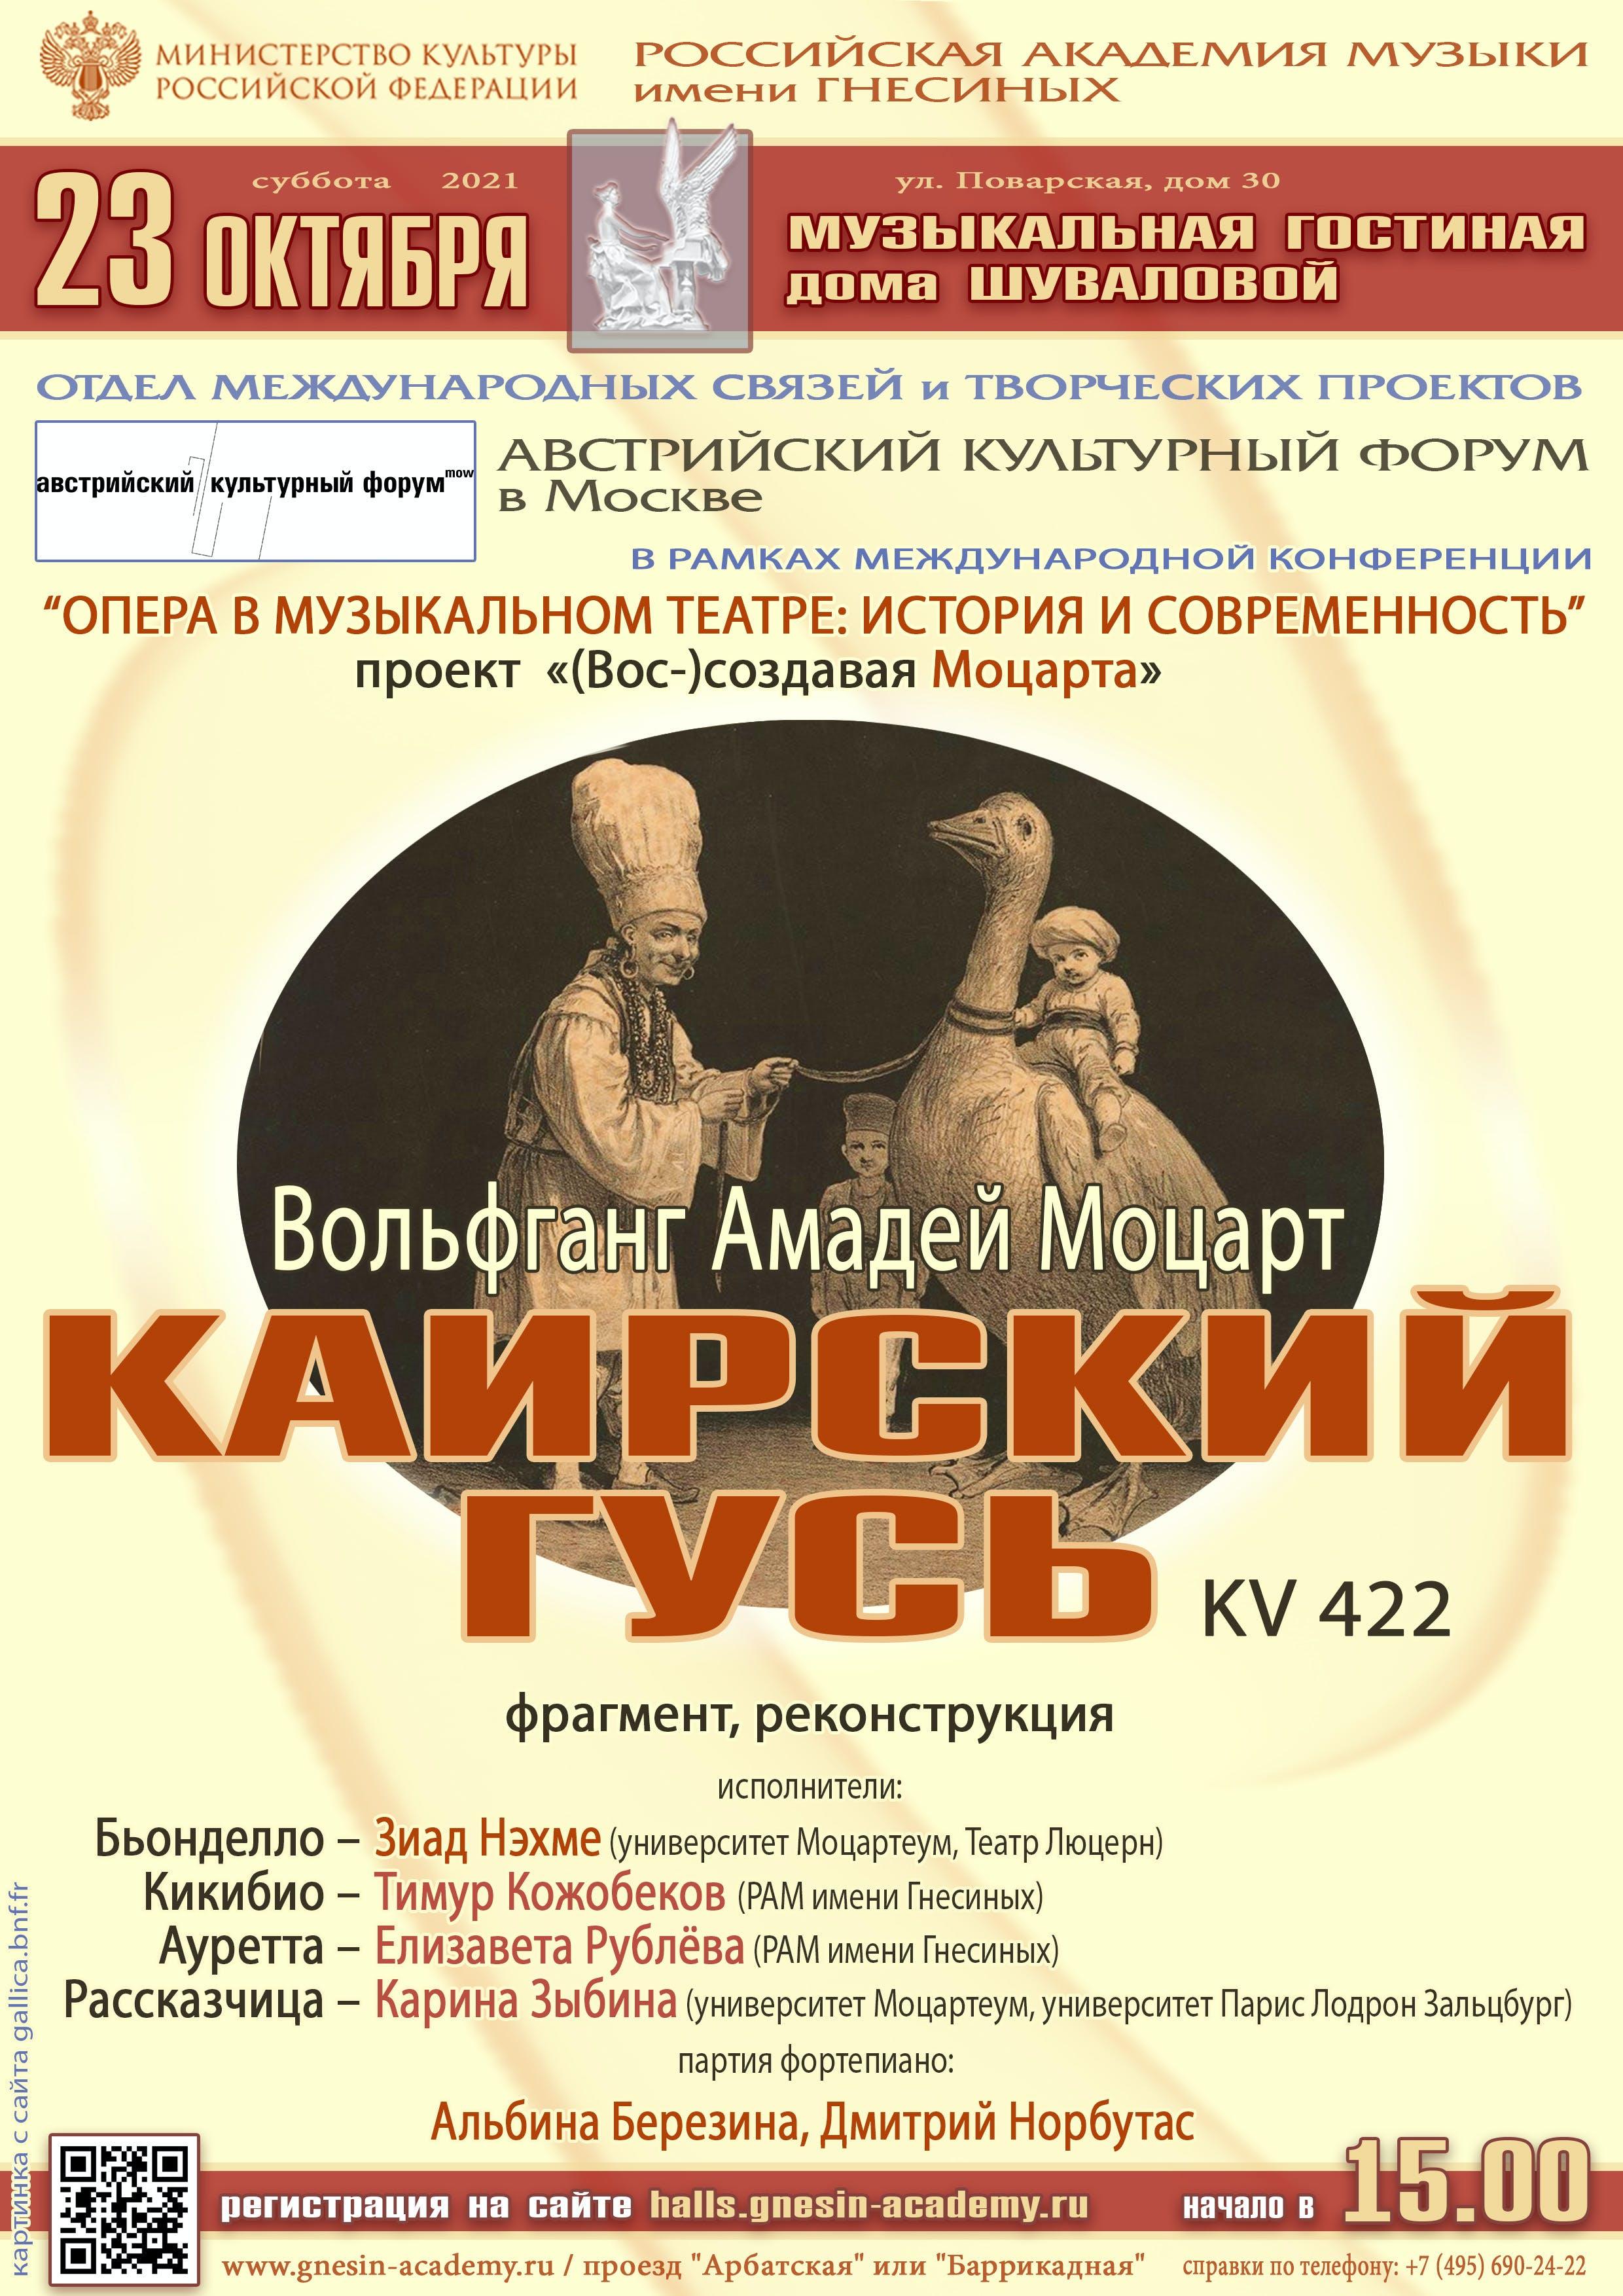 Постер оперы В.А. Моцарта "Каирский гусь", изображение: Российская академия музыки им. Гнесиных